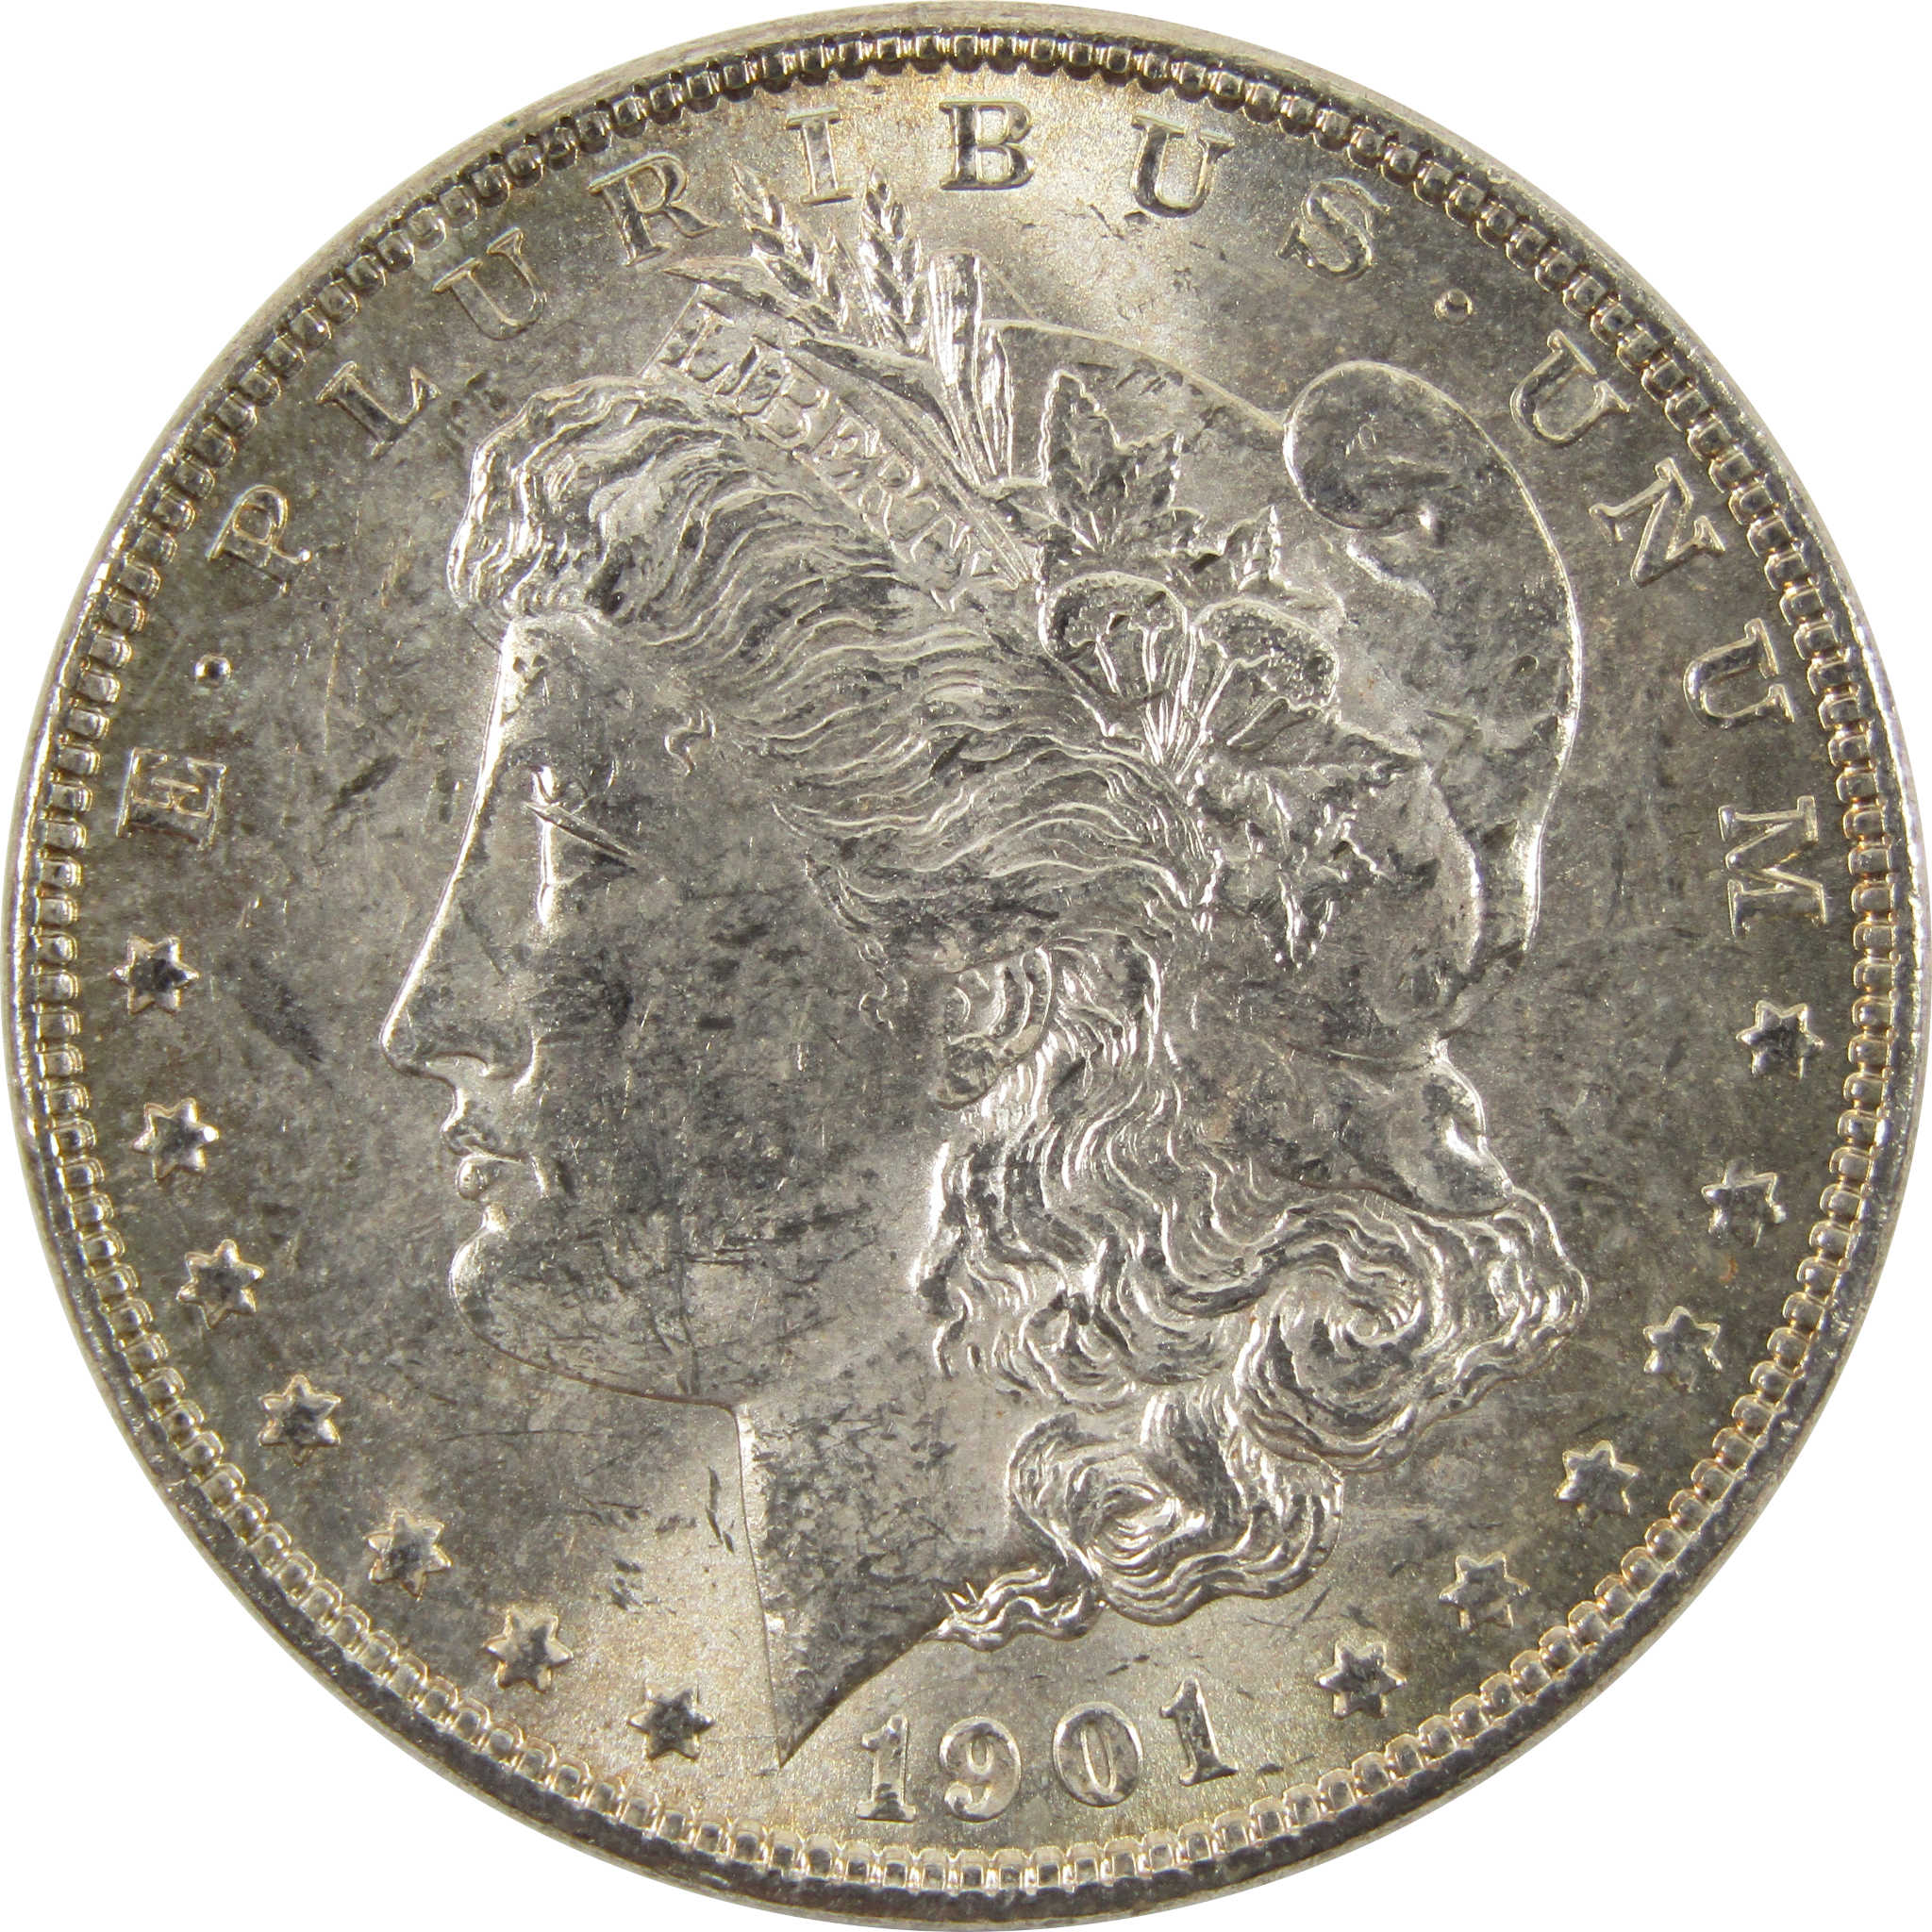 1901 O Morgan Dollar BU Uncirculated 90% Silver $1 Coin SKU:I10470 - Morgan coin - Morgan silver dollar - Morgan silver dollar for sale - Profile Coins &amp; Collectibles